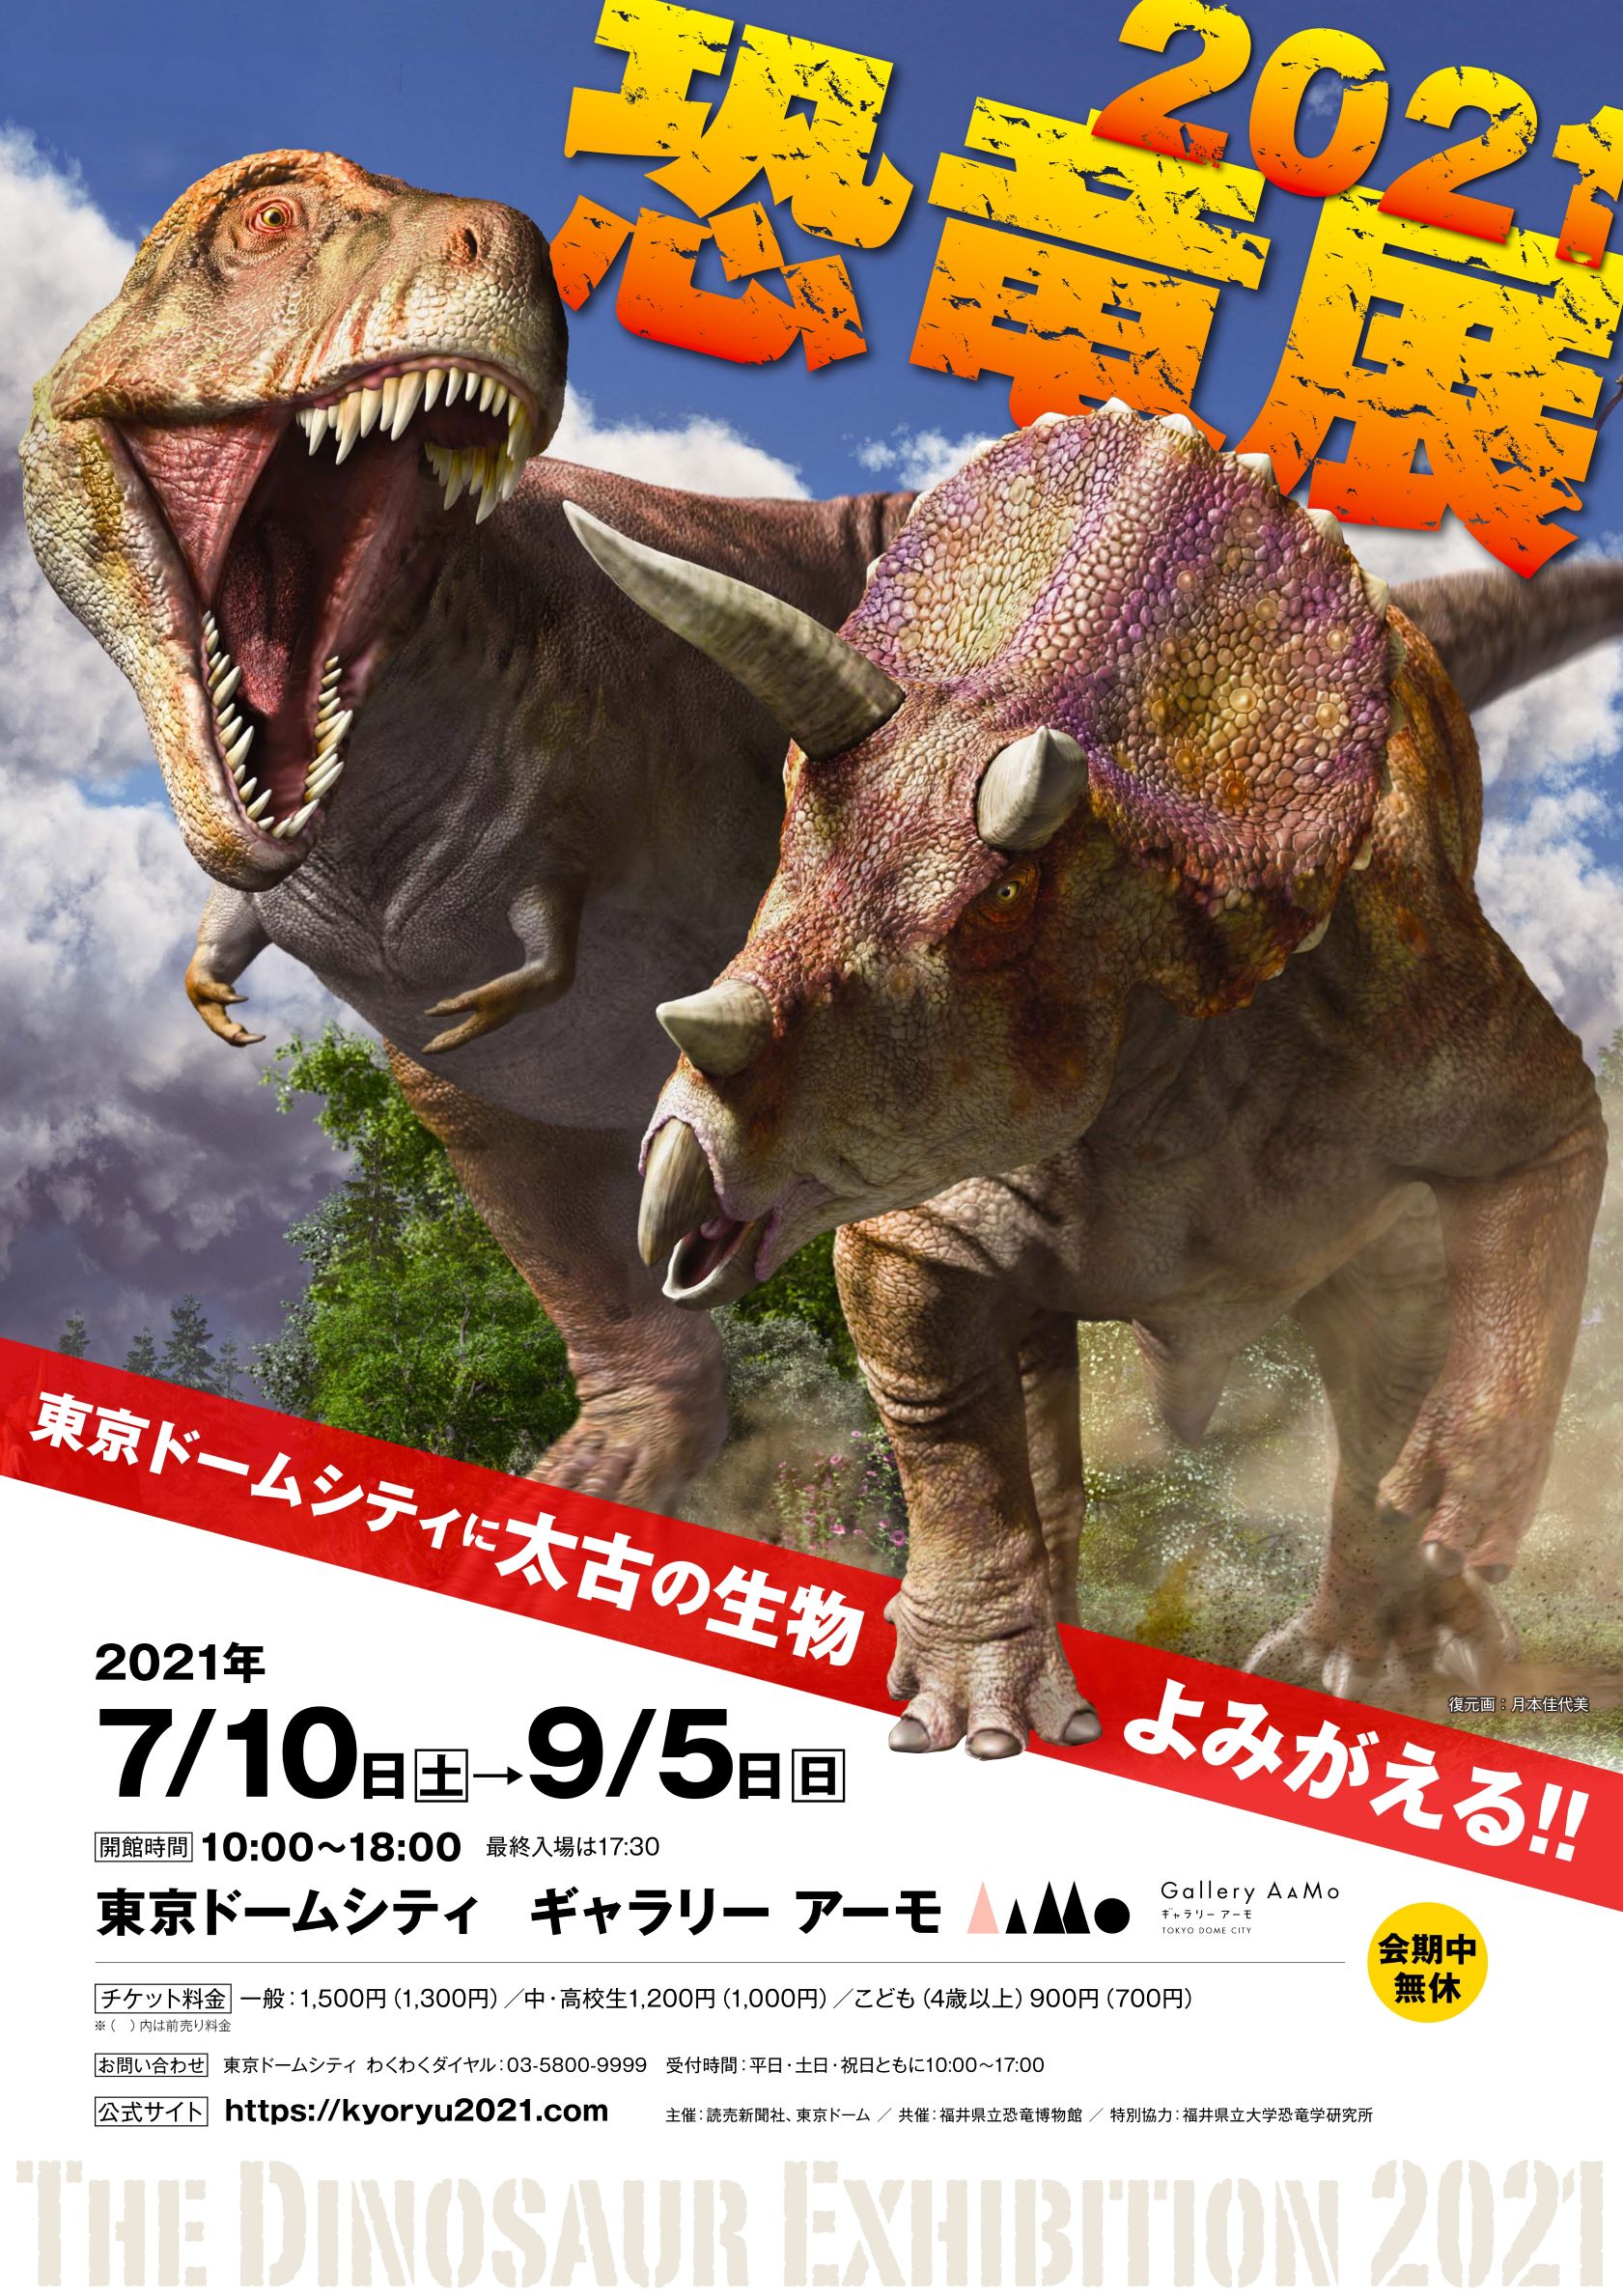 東京ドームシティ Gallery mo ギャラリー アーモ 恐竜 展21 追加情報 夏休みの思い出作りにぴったりな企画を多数実施 株式会社東京ドームのプレスリリース